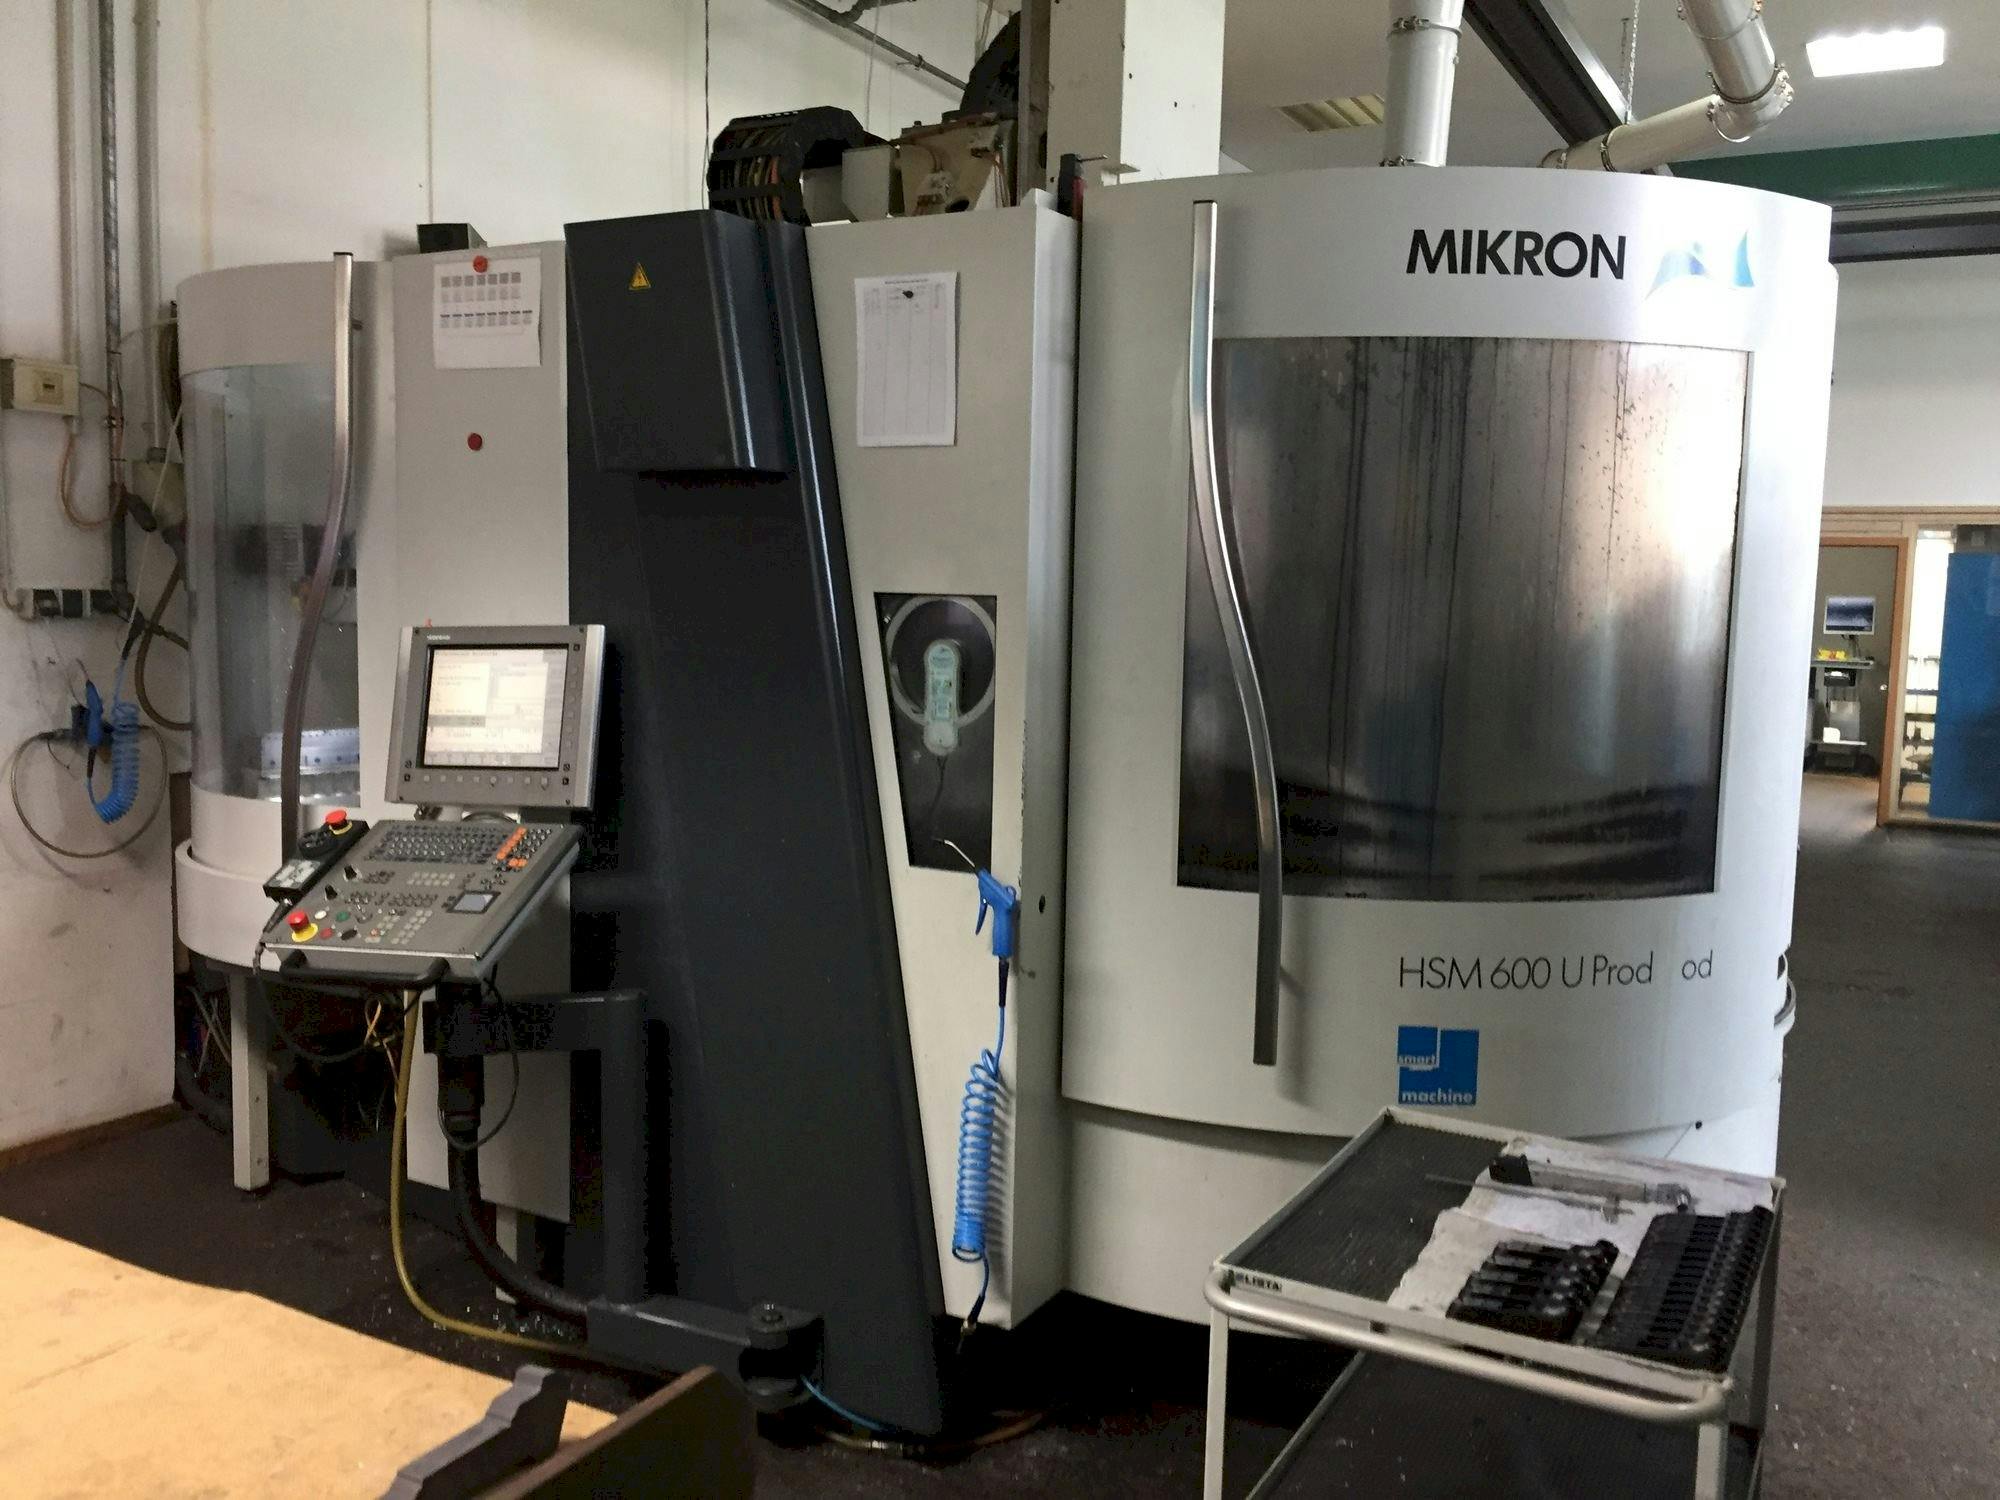 Vooraanzicht  van MIKRON HSM 600U Prodmod  machine